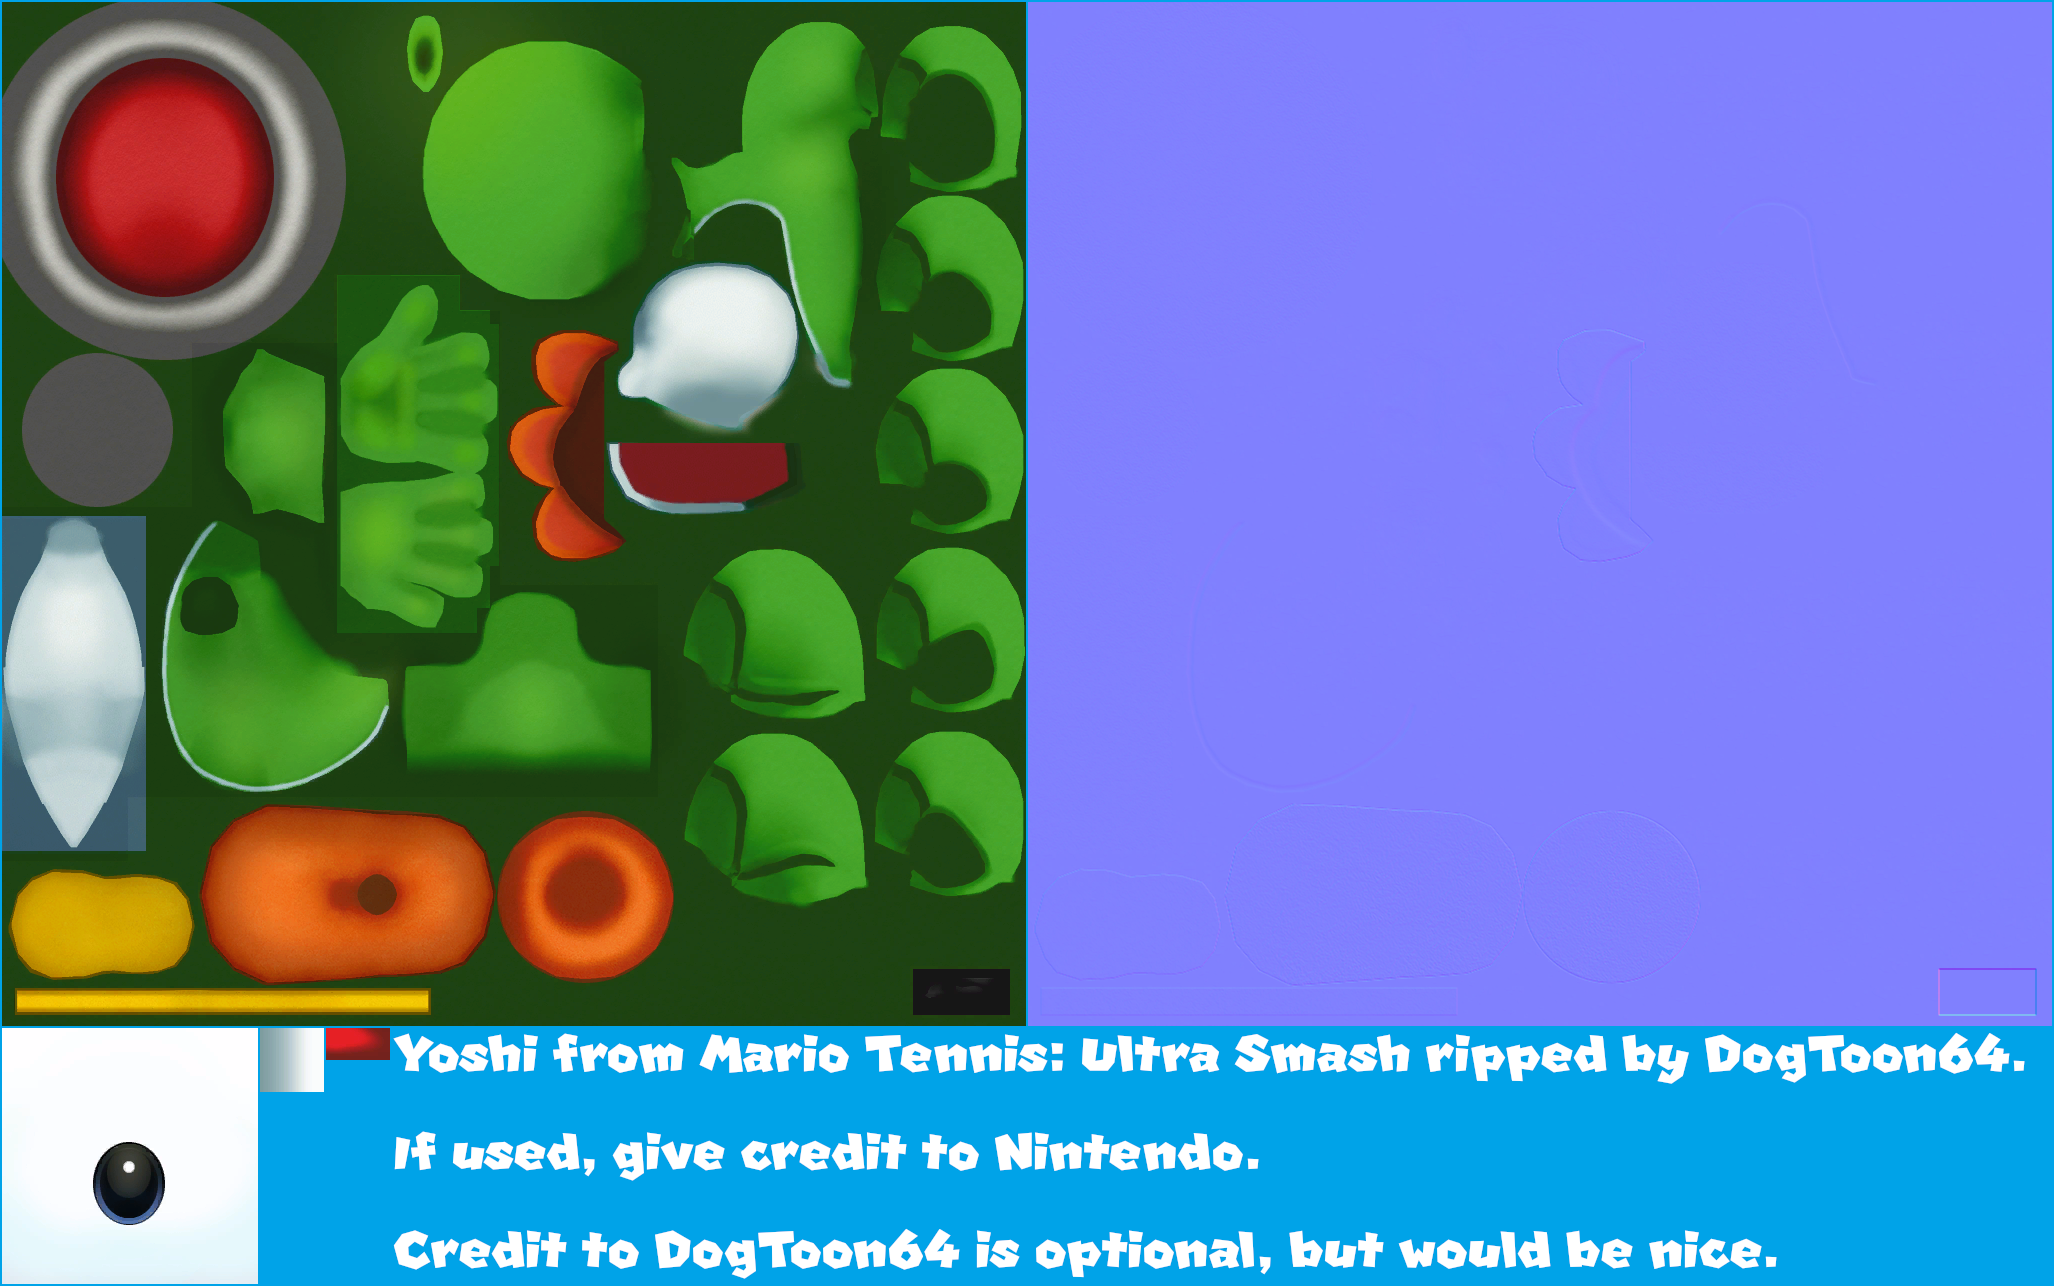 Mario Tennis: Ultra Smash - Yoshi